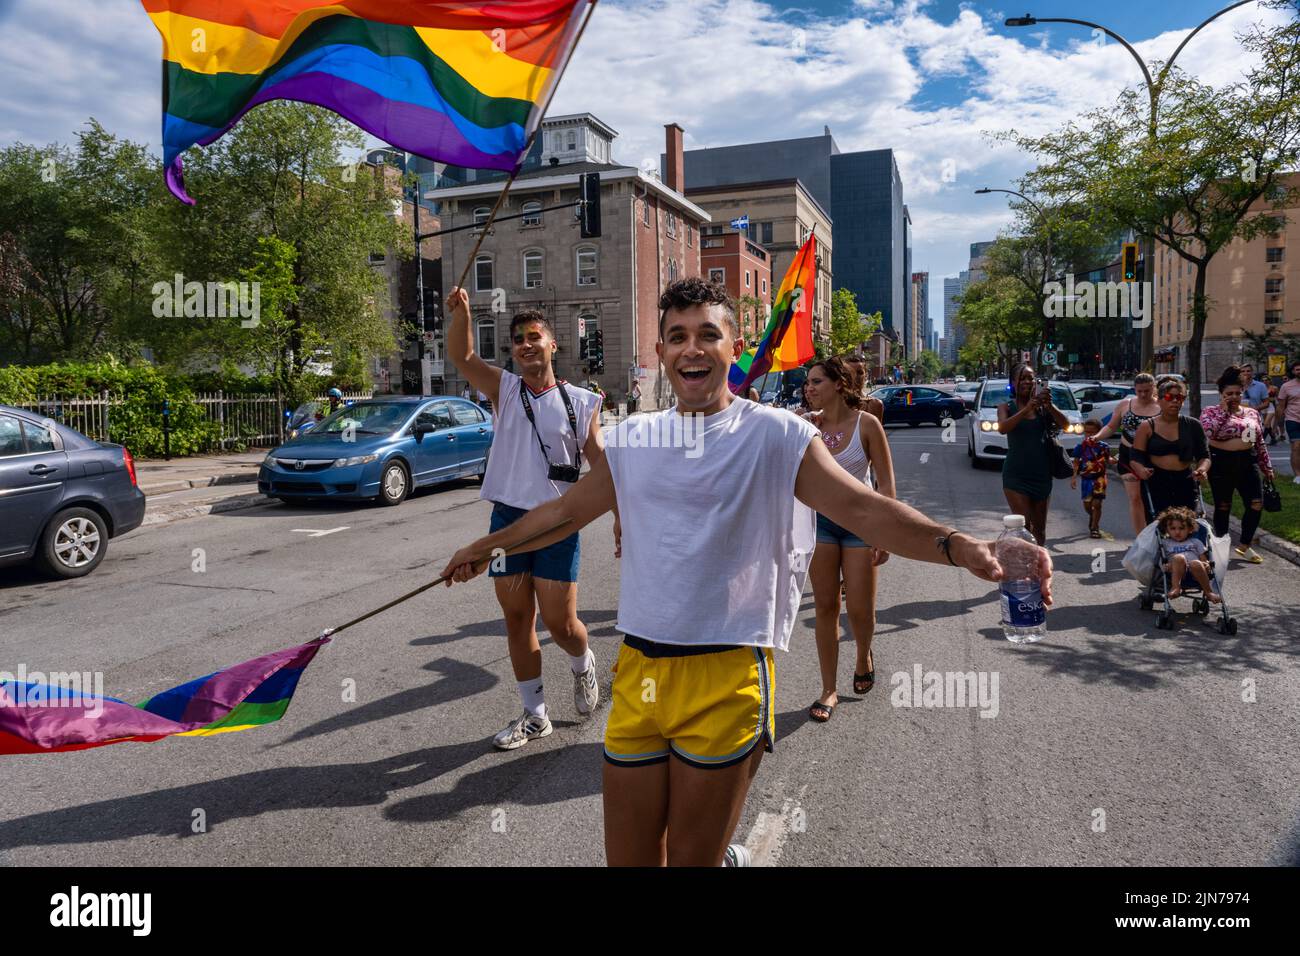 Montreal, CA - 7 de agosto de 2022: Un joven participa en una marcha espontánea del orgullo gay después de que el desfile oficial del orgullo fuera cancelado Foto de stock